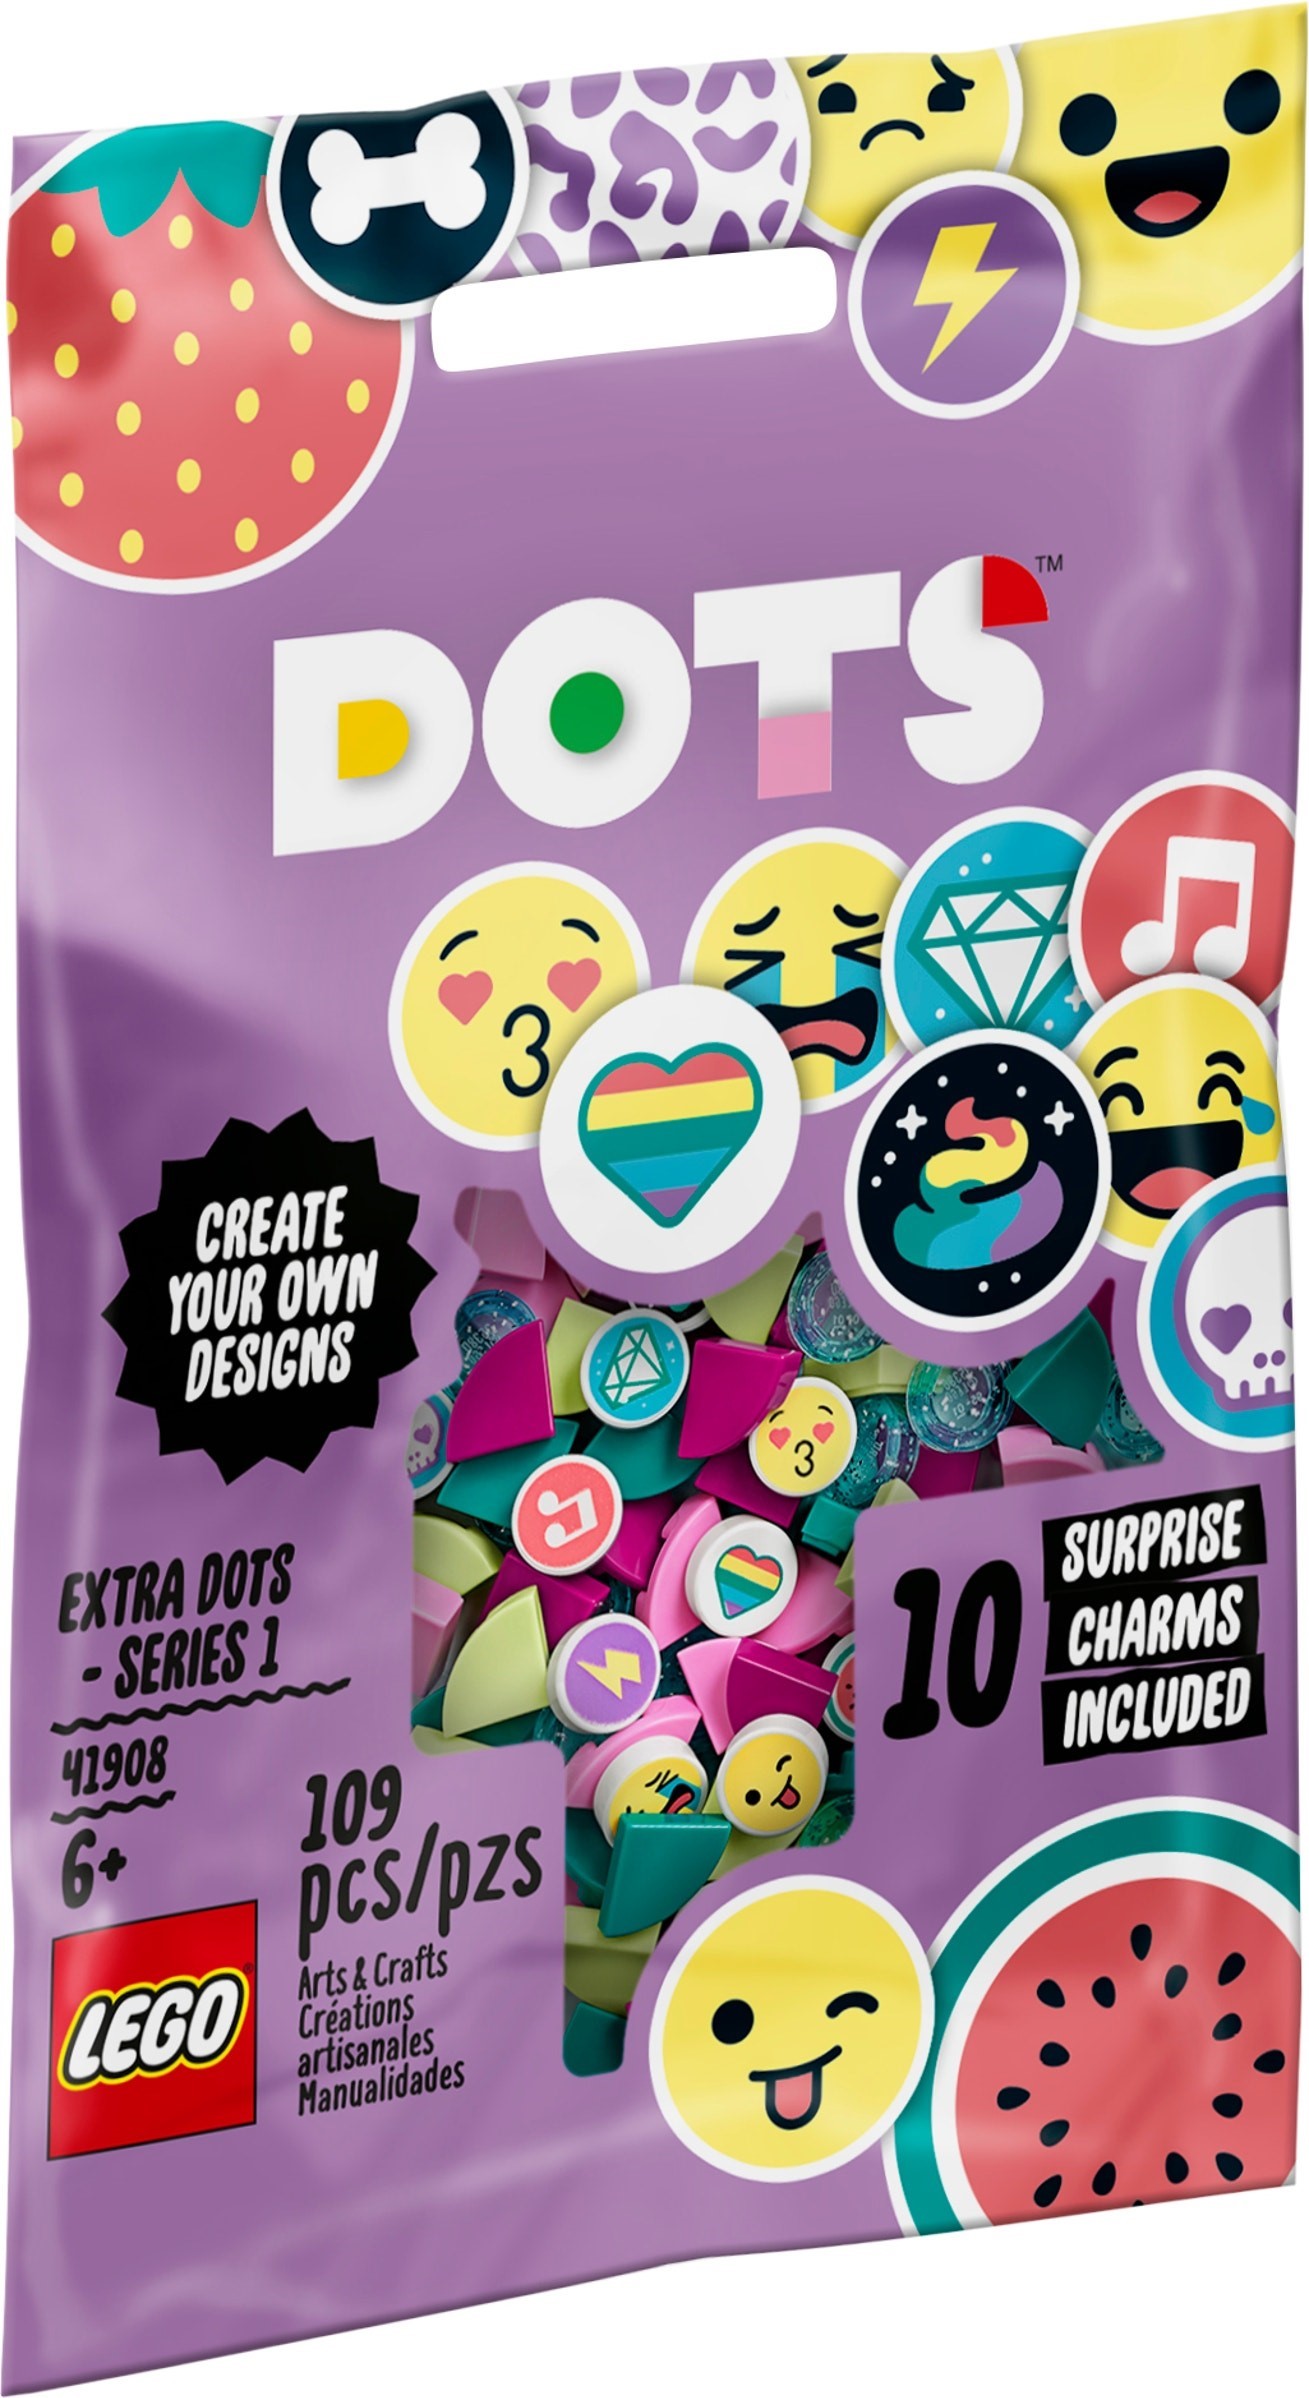 41908 LEGO Extra DOTS - series 1- Chi tiết cộng thêm đầy màu sắc